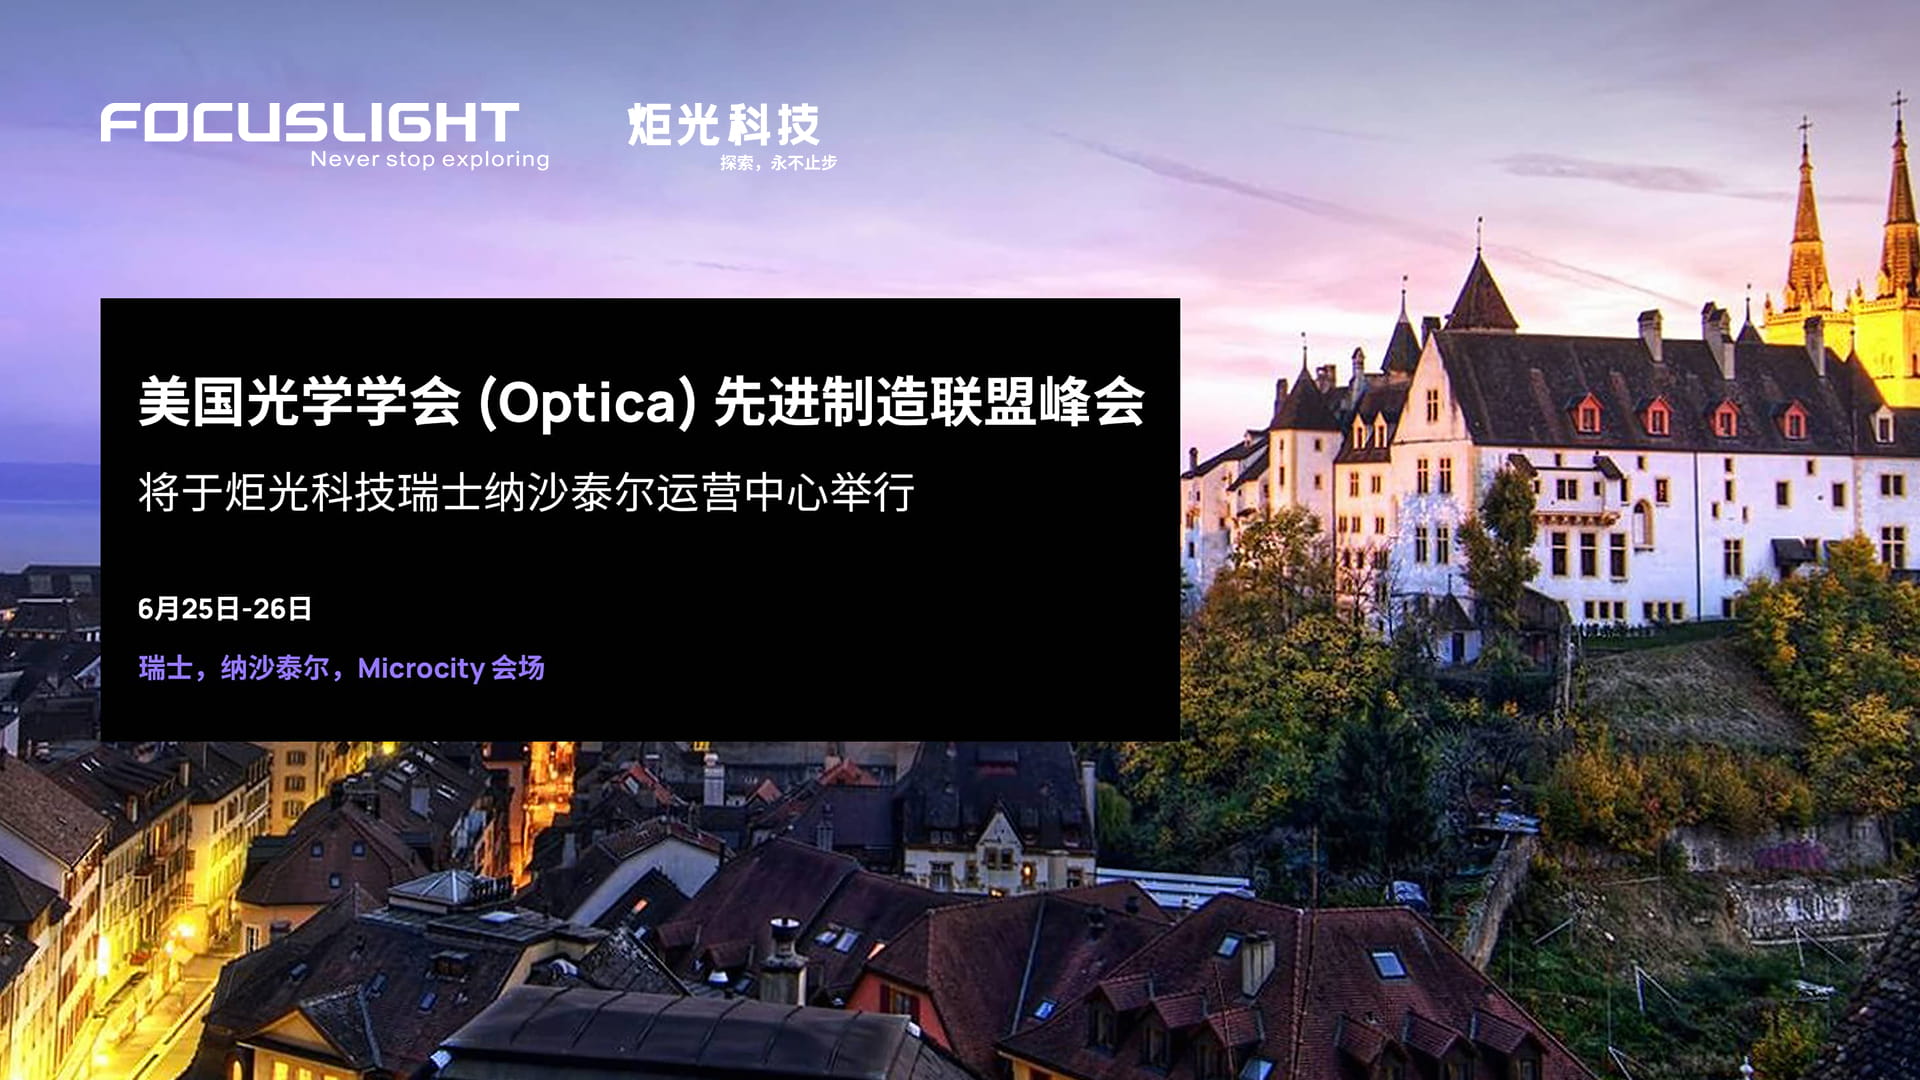 美国光学学会(Optica)先进制造联盟峰会将于新葡萄88805官网瑞士纳沙泰尔运营中心举行